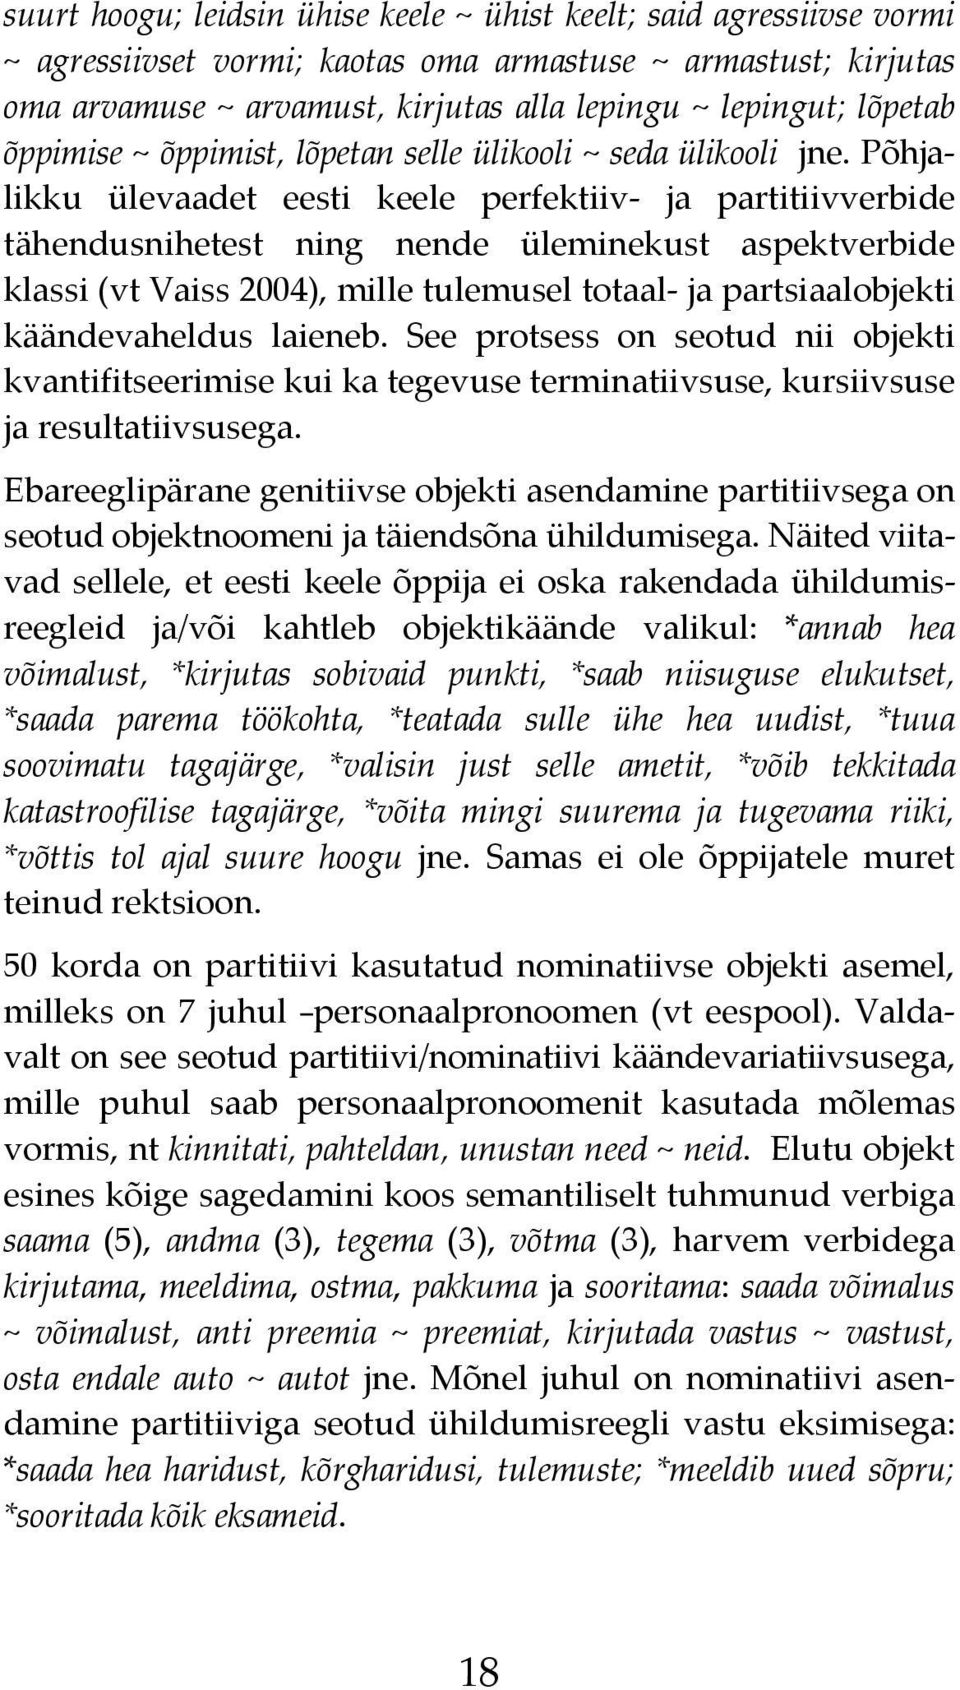 Põhjalikku ülevaadet eesti keele perfektiiv ja partitiivverbide tähendusnihetest ning nende üleminekust aspektverbide klassi (vt Vaiss 2004), mille tulemusel totaal ja partsiaalobjekti käändevaheldus